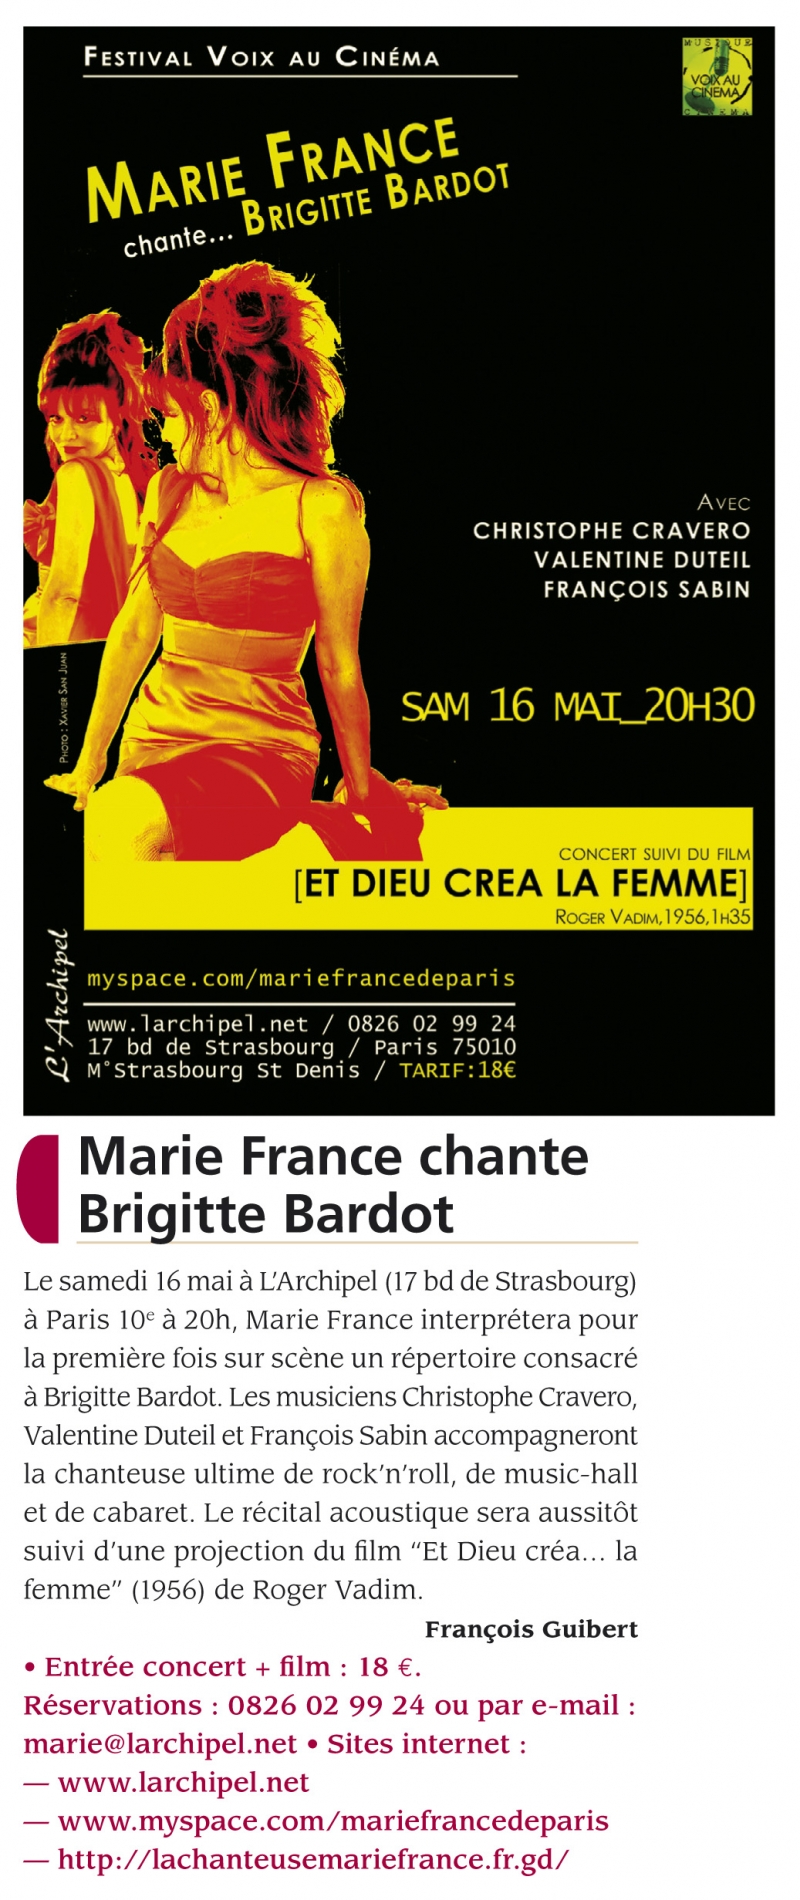 “MARIE FRANCE chante BRIGITTE BARDOT” 16/05/2009 L'Archipel à Paris : compte-rendu 090423060353393753533405